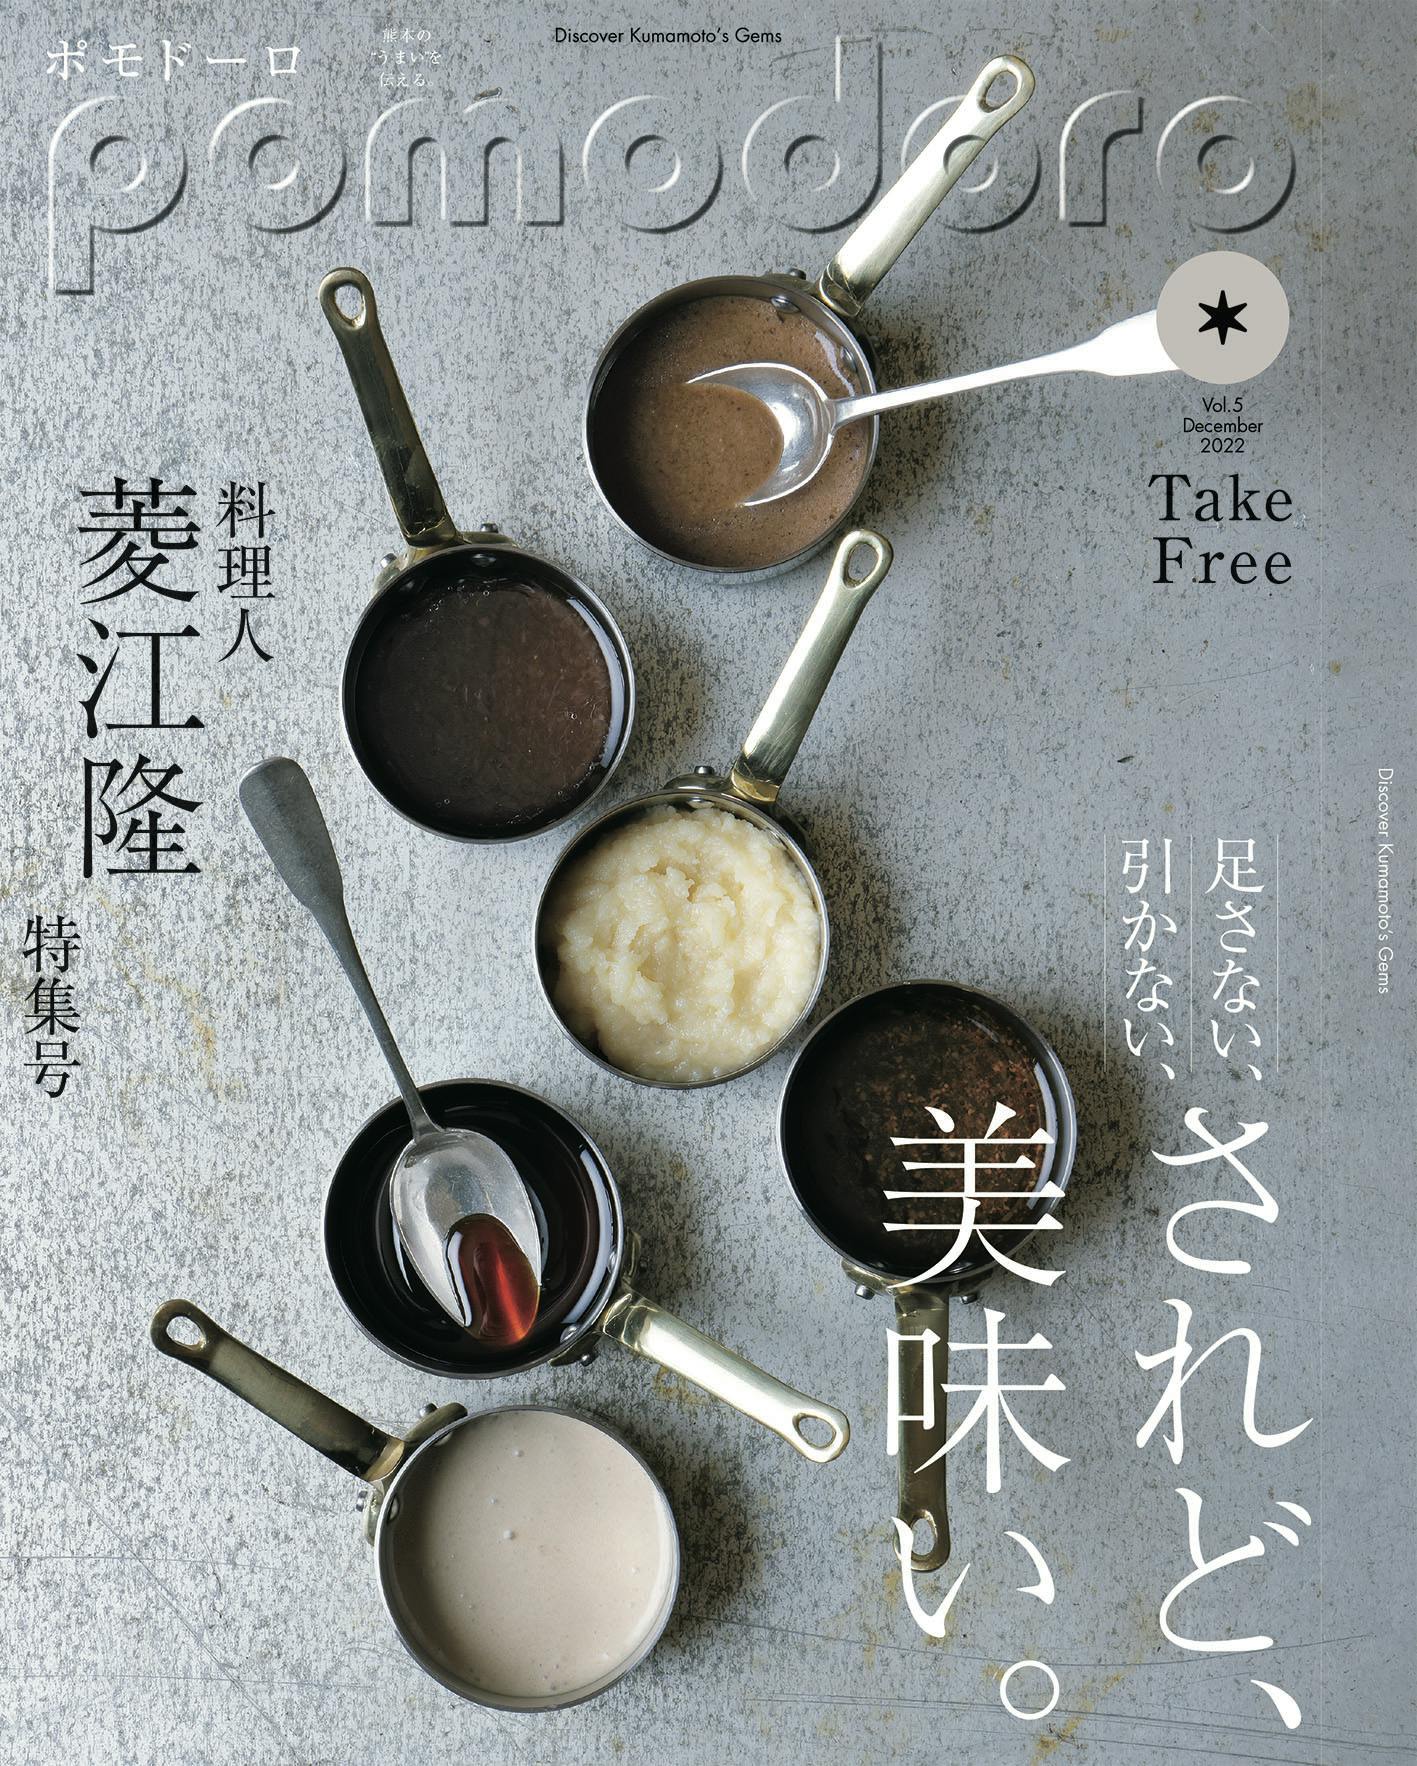 Foi publicada a 5ª edição da “pomodoro”, revista gratuita que transmite as “delícias” de Kumamoto!